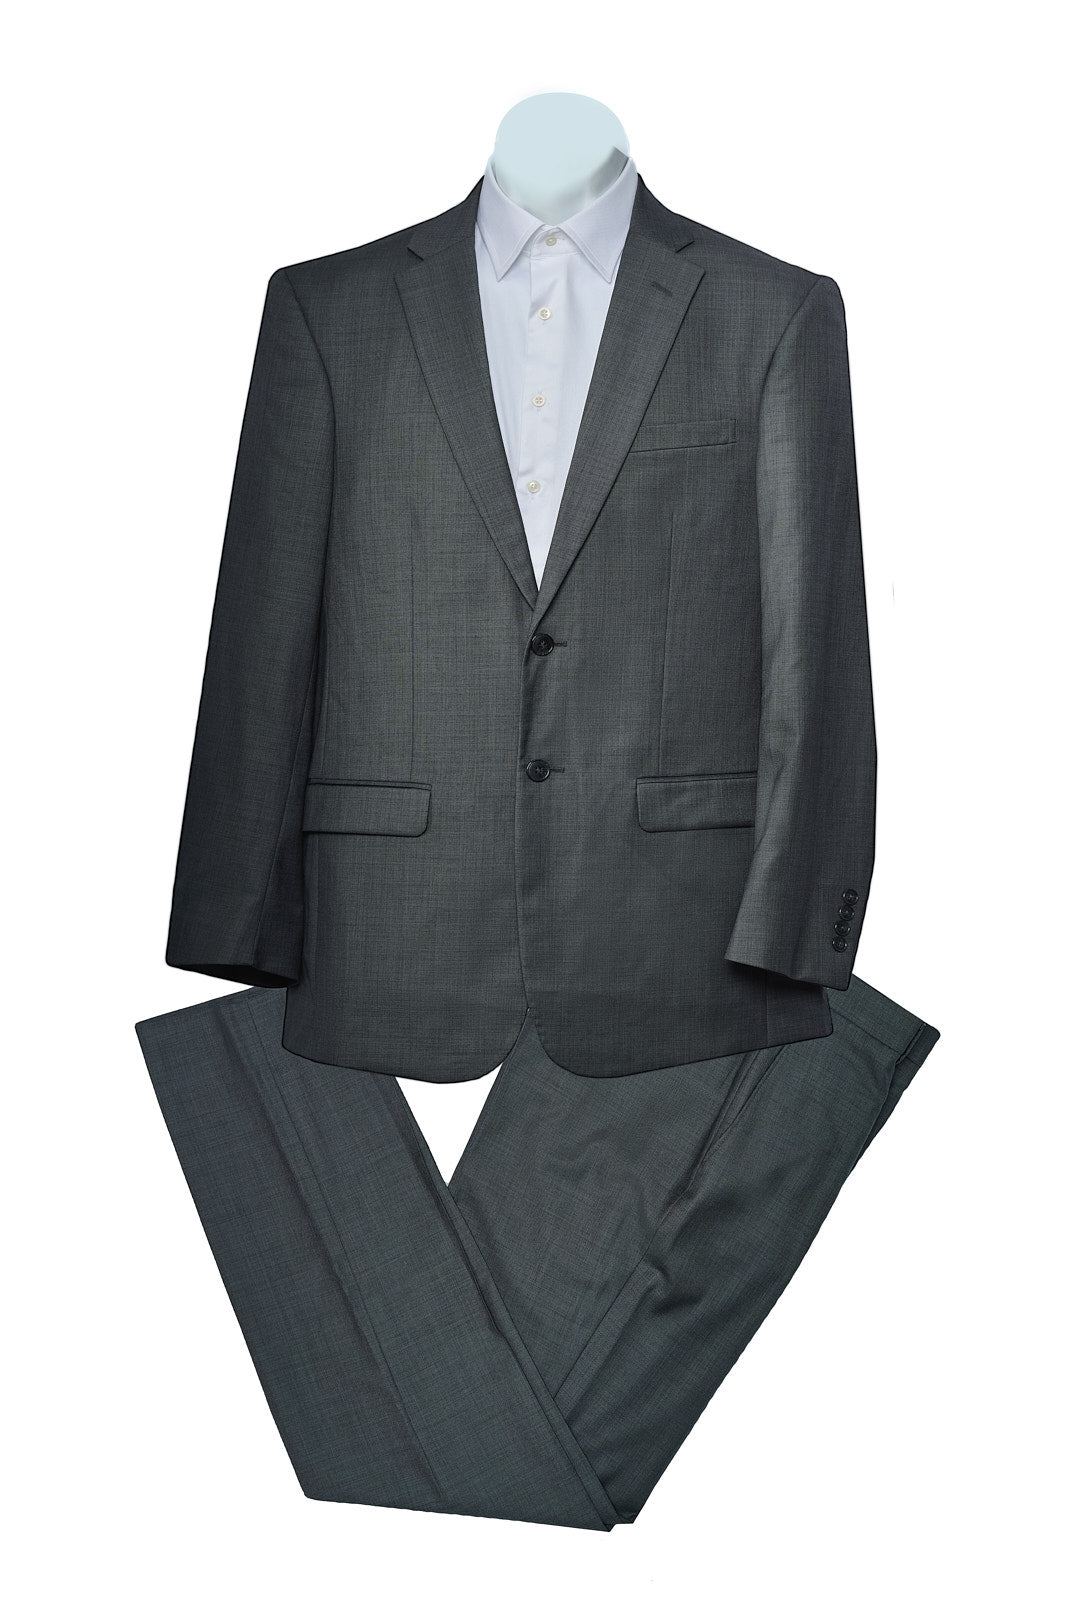 Classic Gray Plain Suit